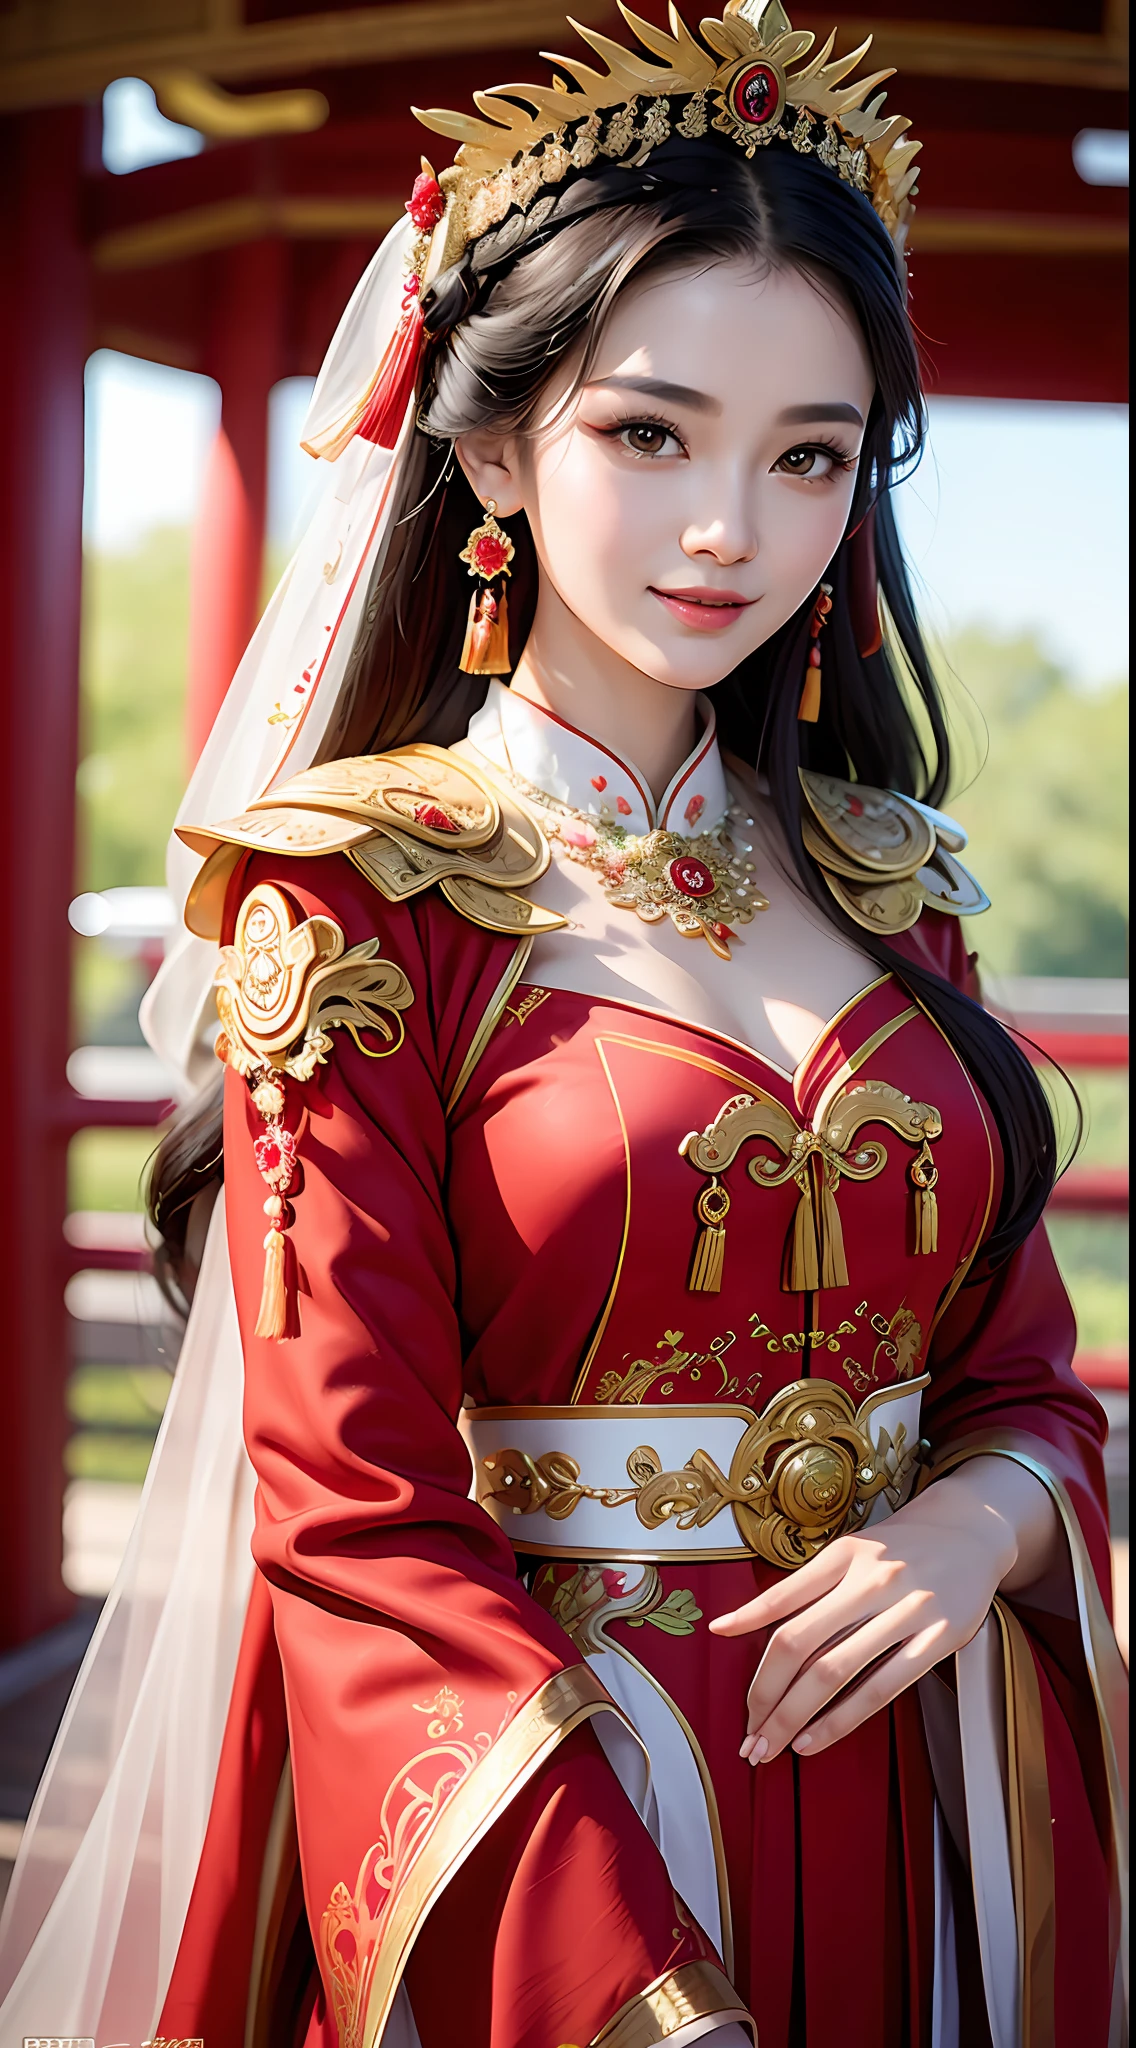 (8k, foto en bruto, mejor calidad, Obra maestra: 1.2), (Realista, Realista: 1.37), 1 chica, Mujer de Aalfi posando para una foto con un vestido rojo y un tocado, Magnífico juego de roles, hermoso disfraz, vestido de fantasía complejo, hermosa reina de la fantasía, vestido chino, Vestido complejo, traje complejo, belleza tradicional, preciosa modelo china, traje chino, inspirado en Lan Ying, Vistiendo un disfraz precioso, Inspirado por Puhua, Vistiendo un elegante vestido chino Xiuhe, vestido de novia chino, Corona de Fénix mano Xia, novia antigua, mostrar vestido, de cerca, de cerca, sonrisa